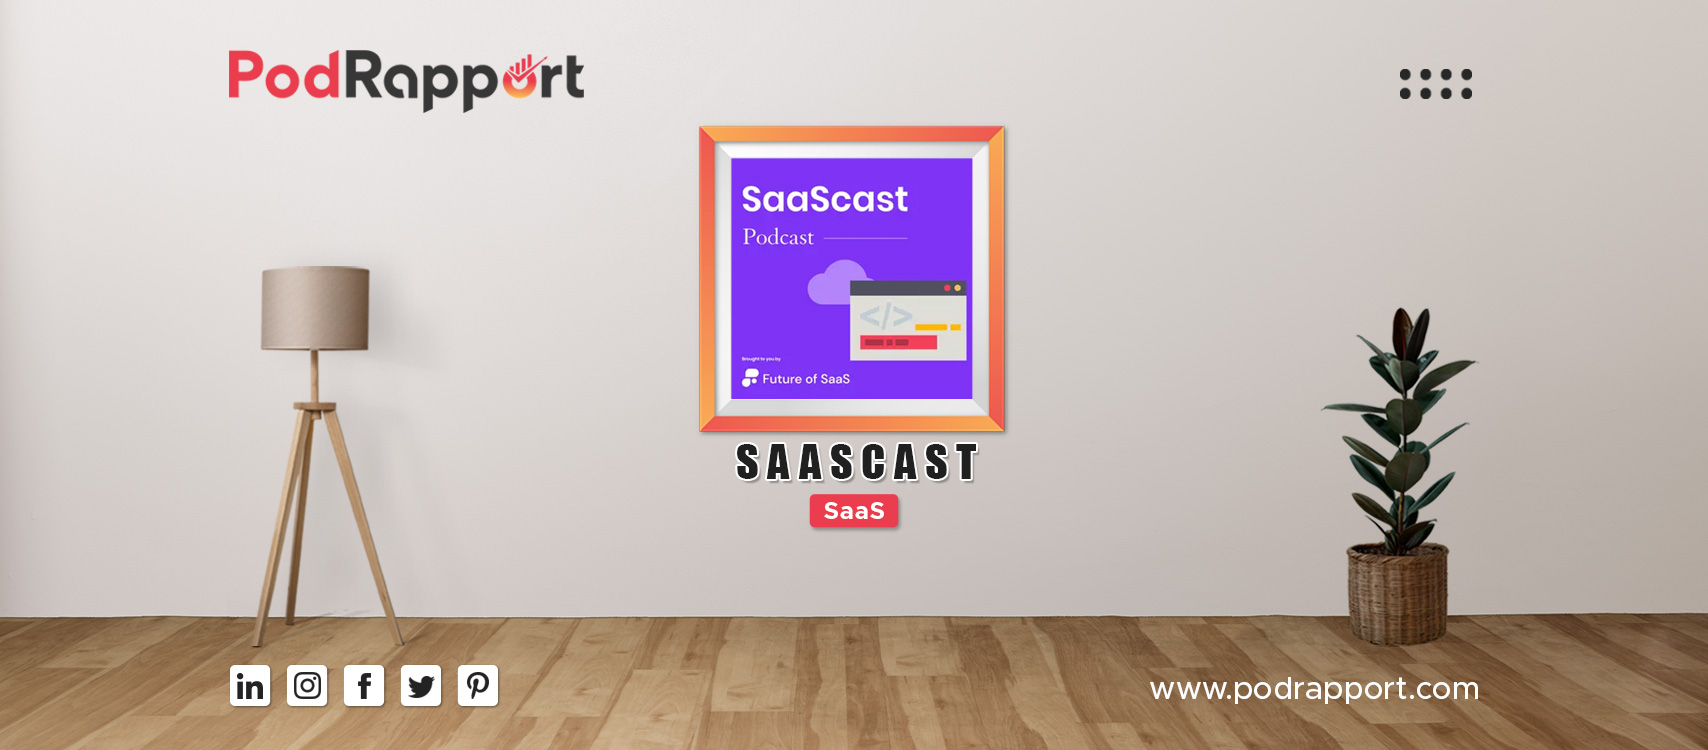 SaaScast